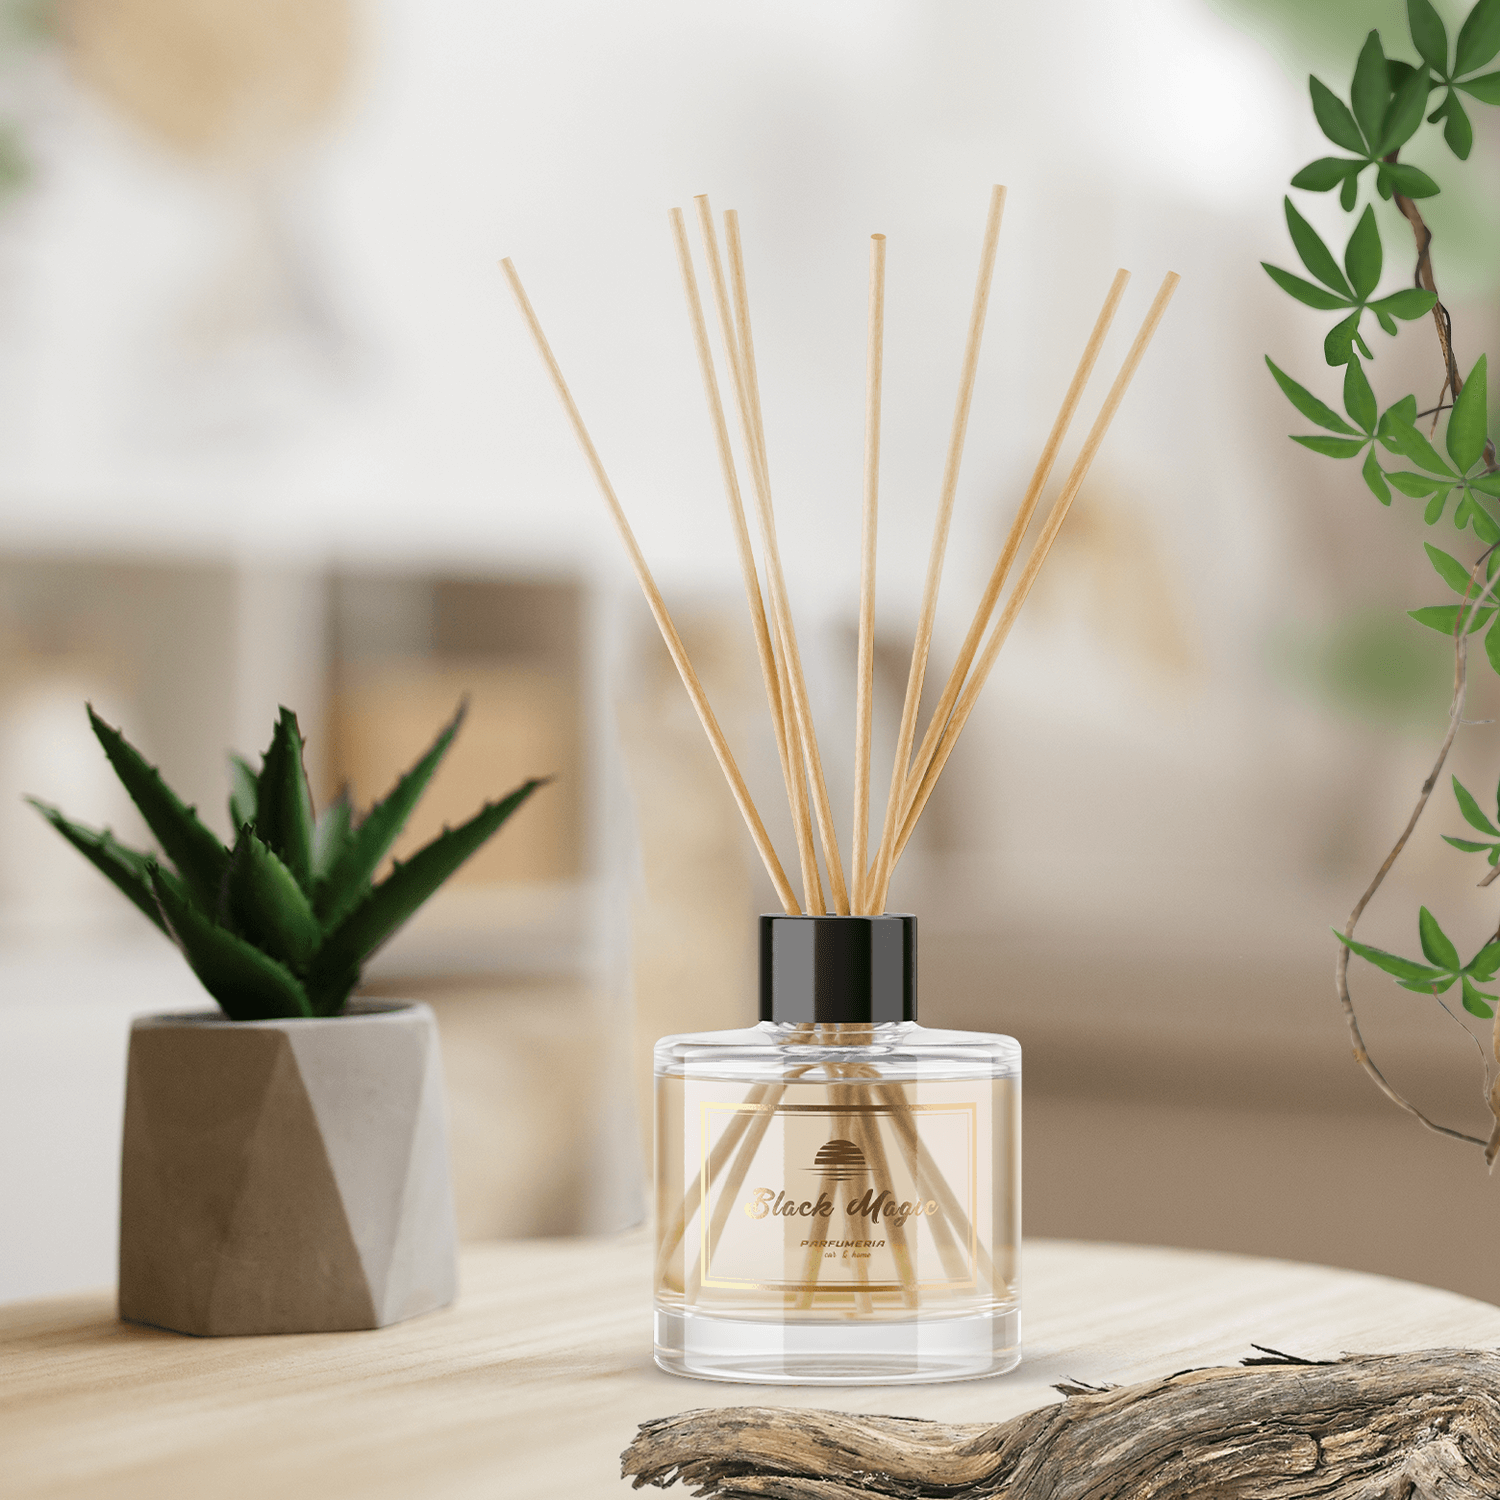 Parfum Cameră – Black magic